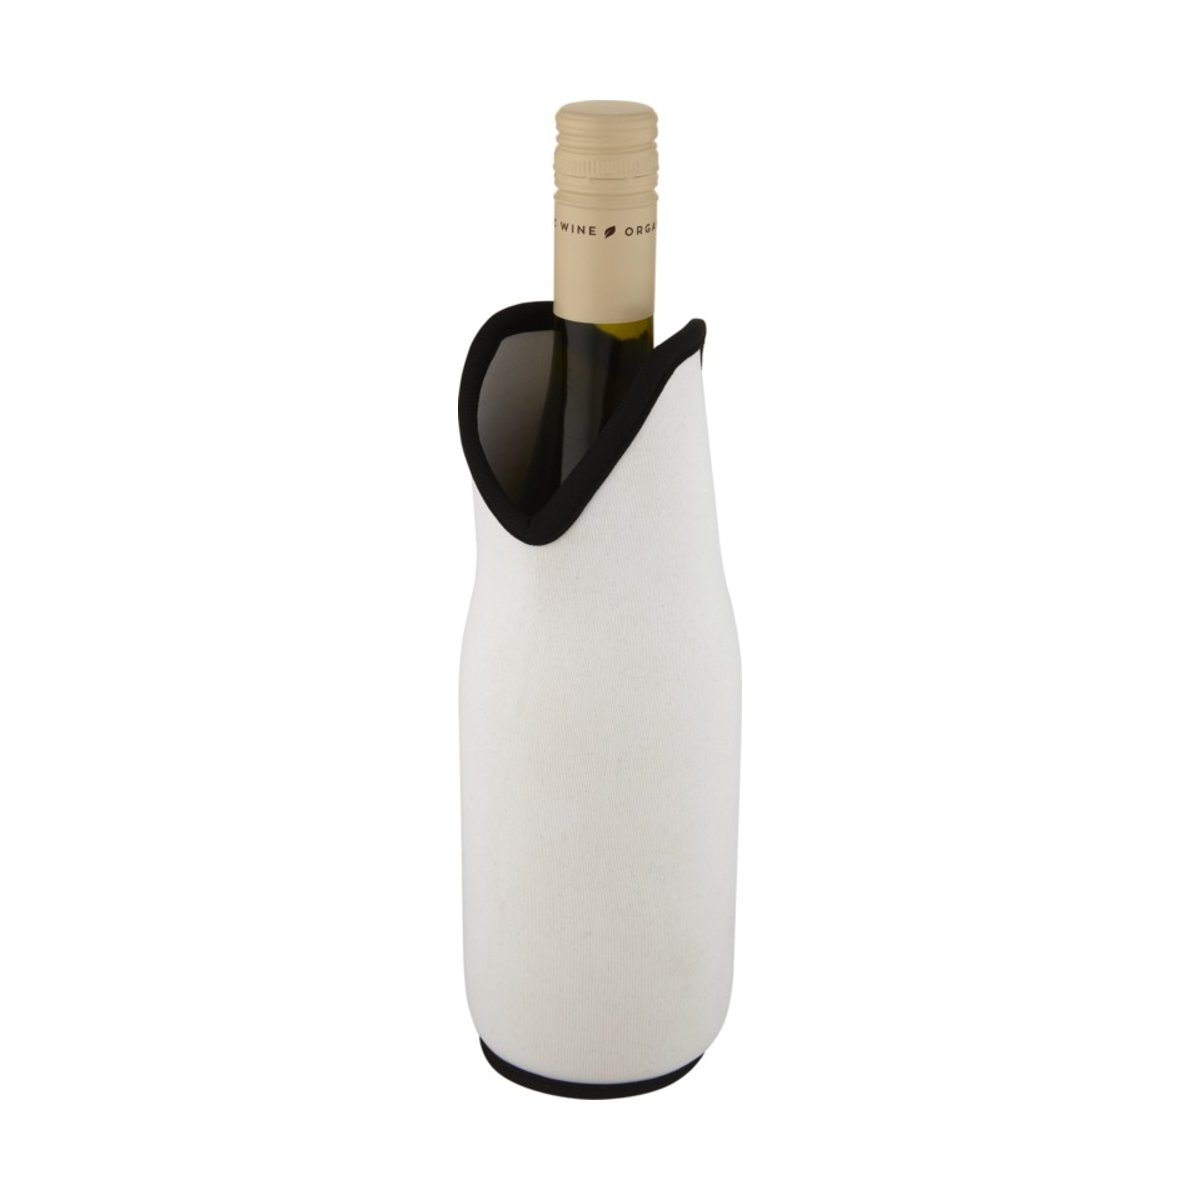 Uchwyt na wino z neoprenu pochodzącego z recyklingu Noun